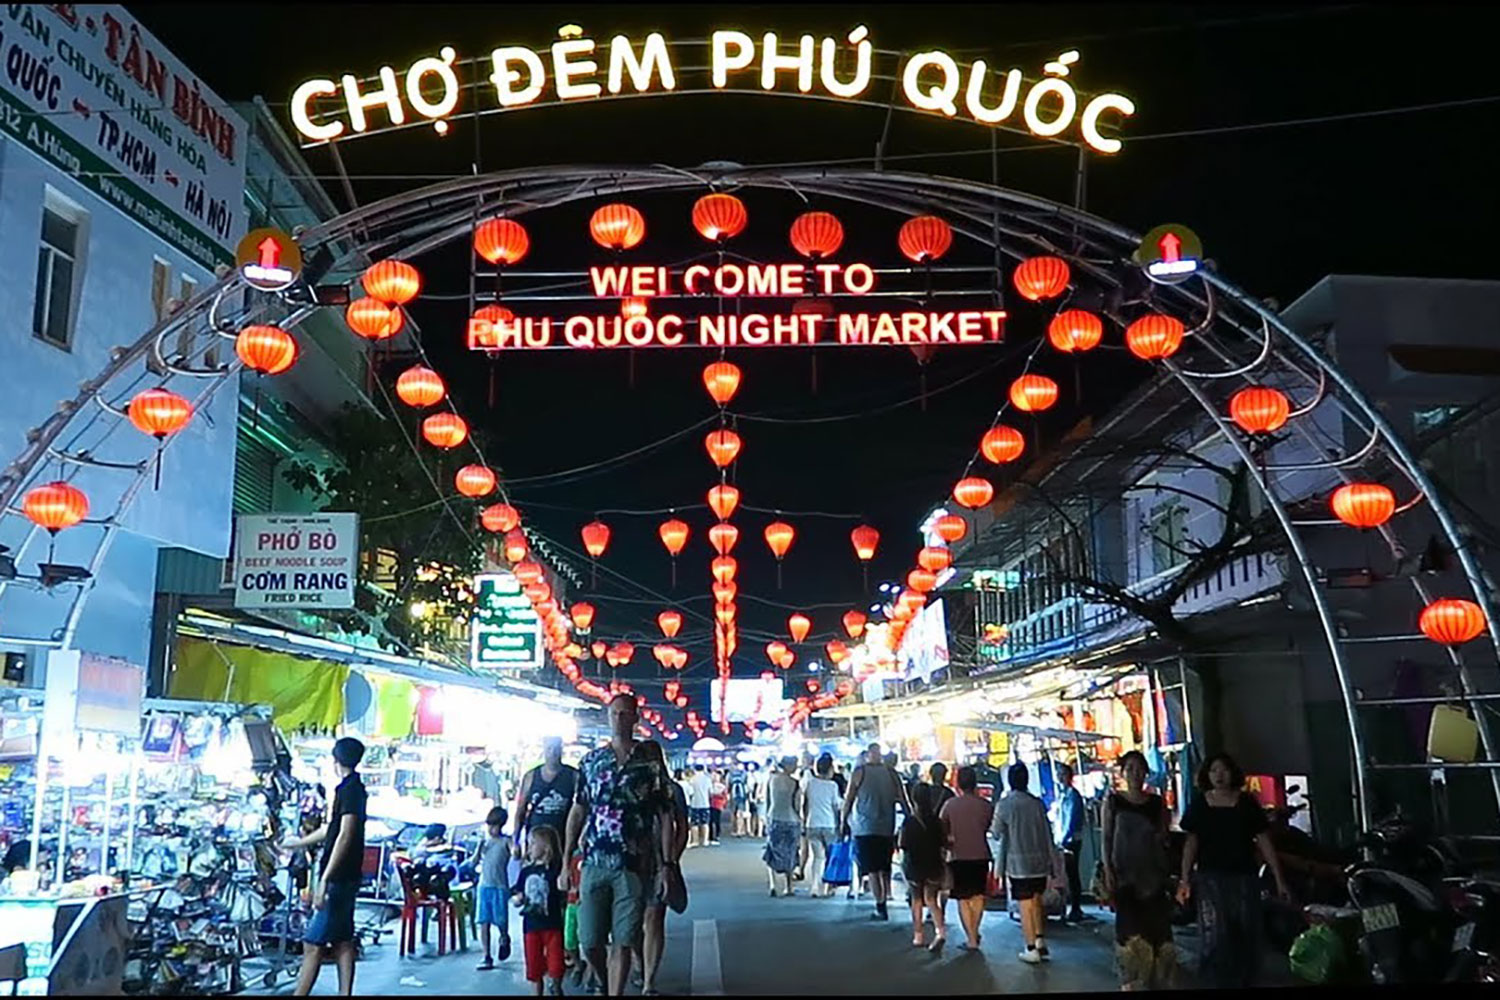 Chợ đêm Phú Quốc - một điểm nhấn tạo ra sự hấp dẫn cho nhiều dự án bất động sản du lịch nghỉ dưỡng tại Đảo ngọc